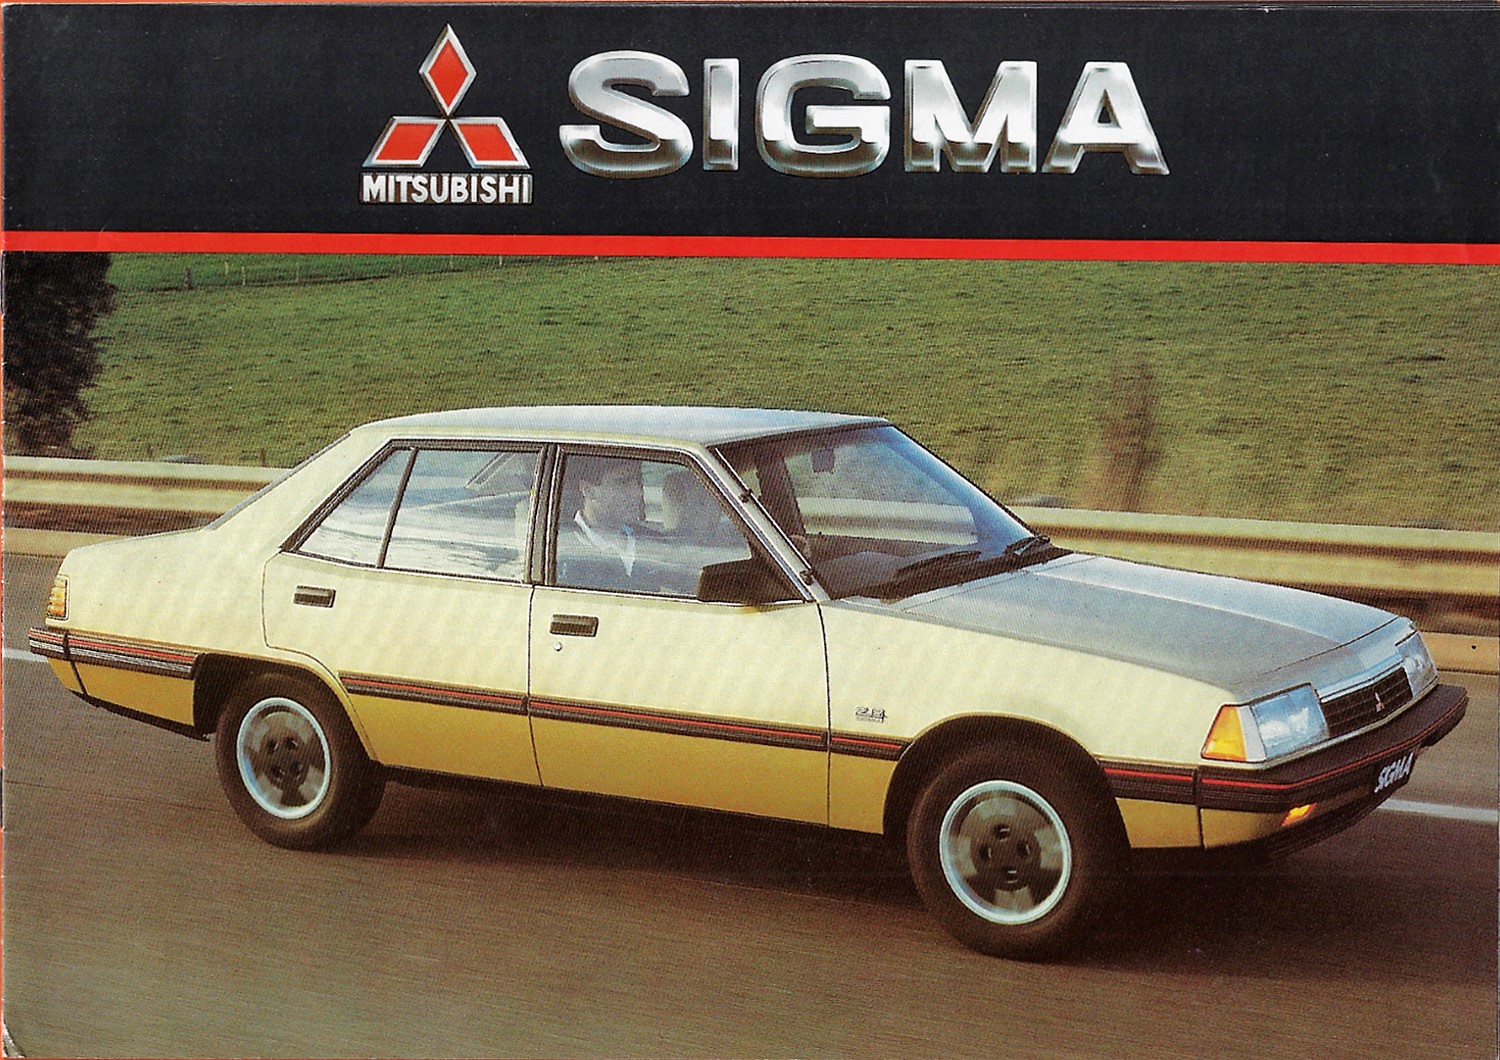 1986 Mitsubishi Sigma Brochure Australia 01